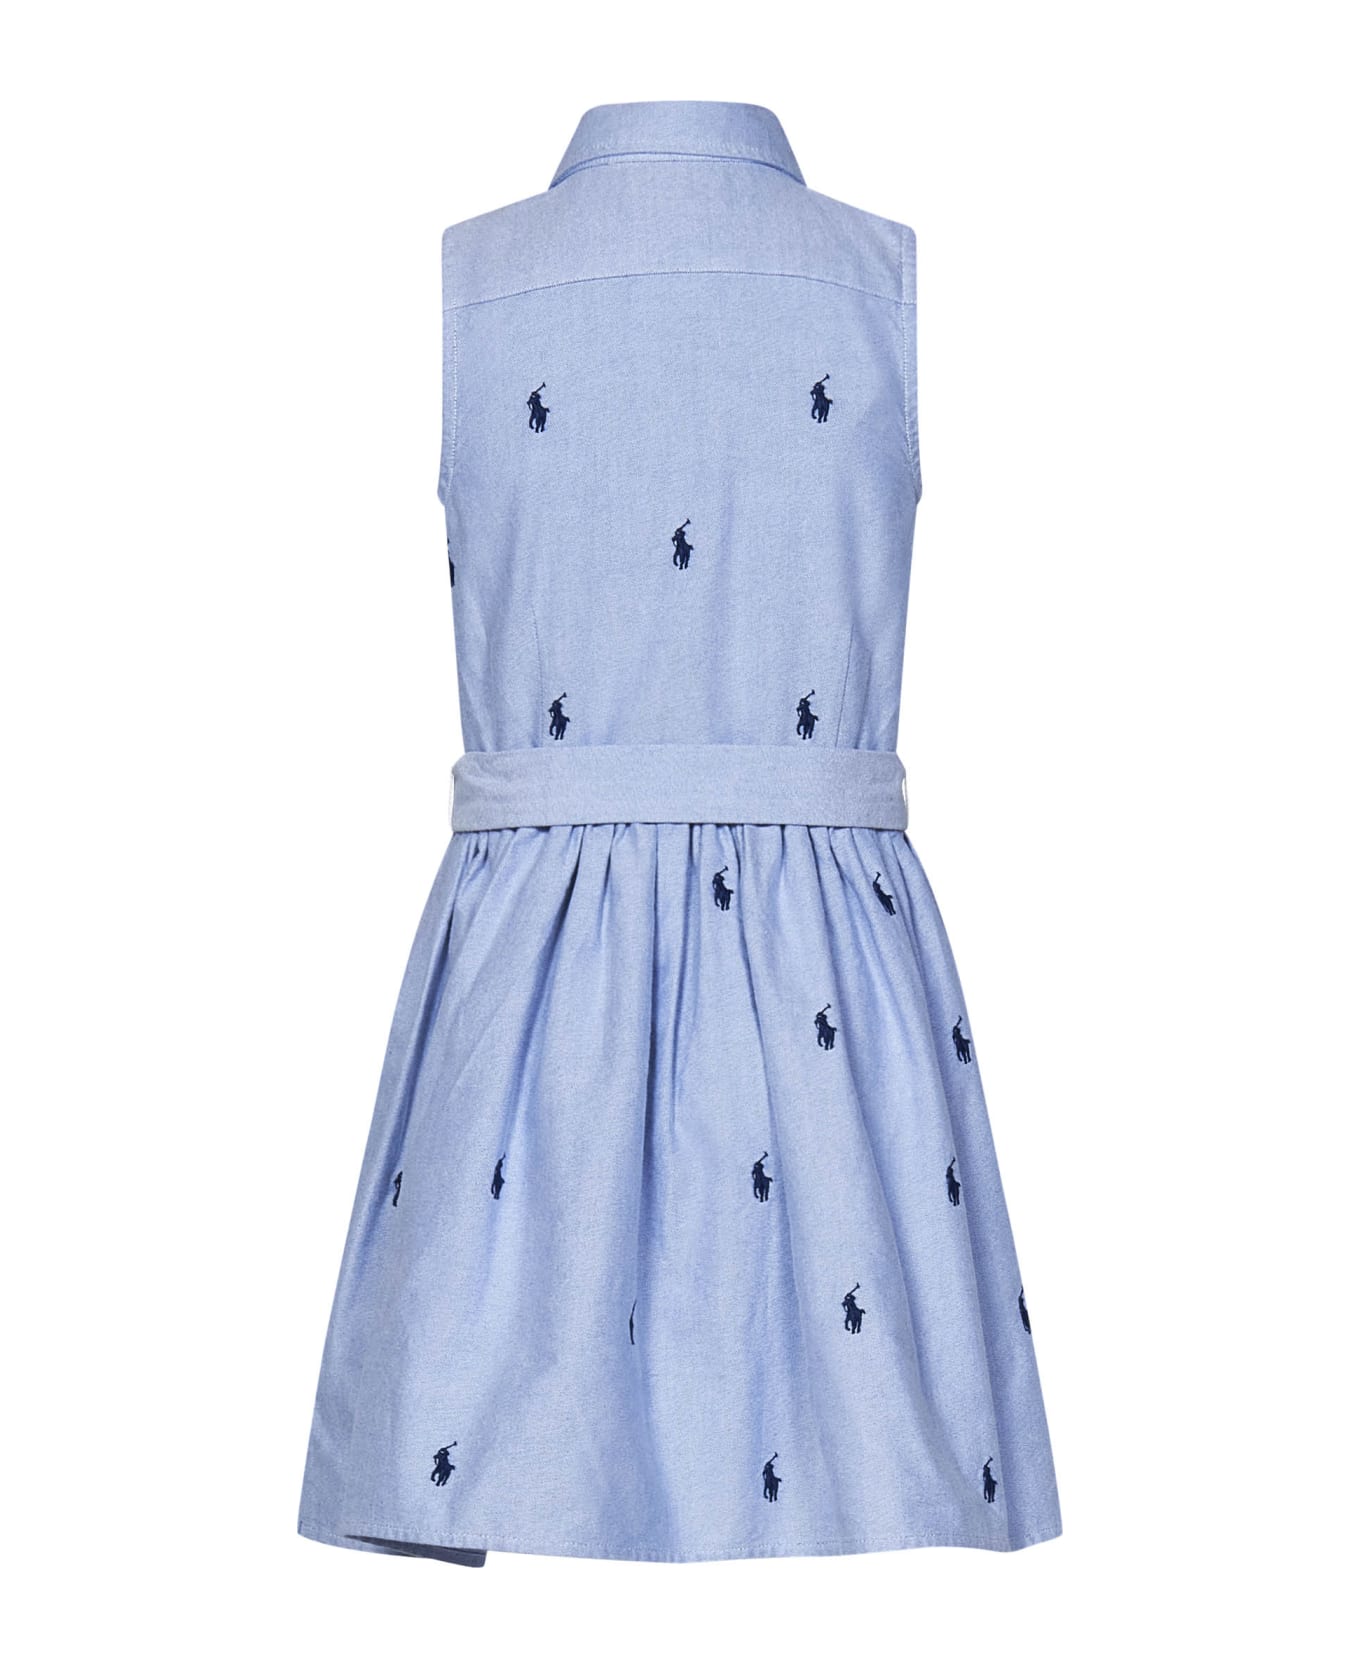 Polo Ralph Lauren Kids Dress - Clear Blue